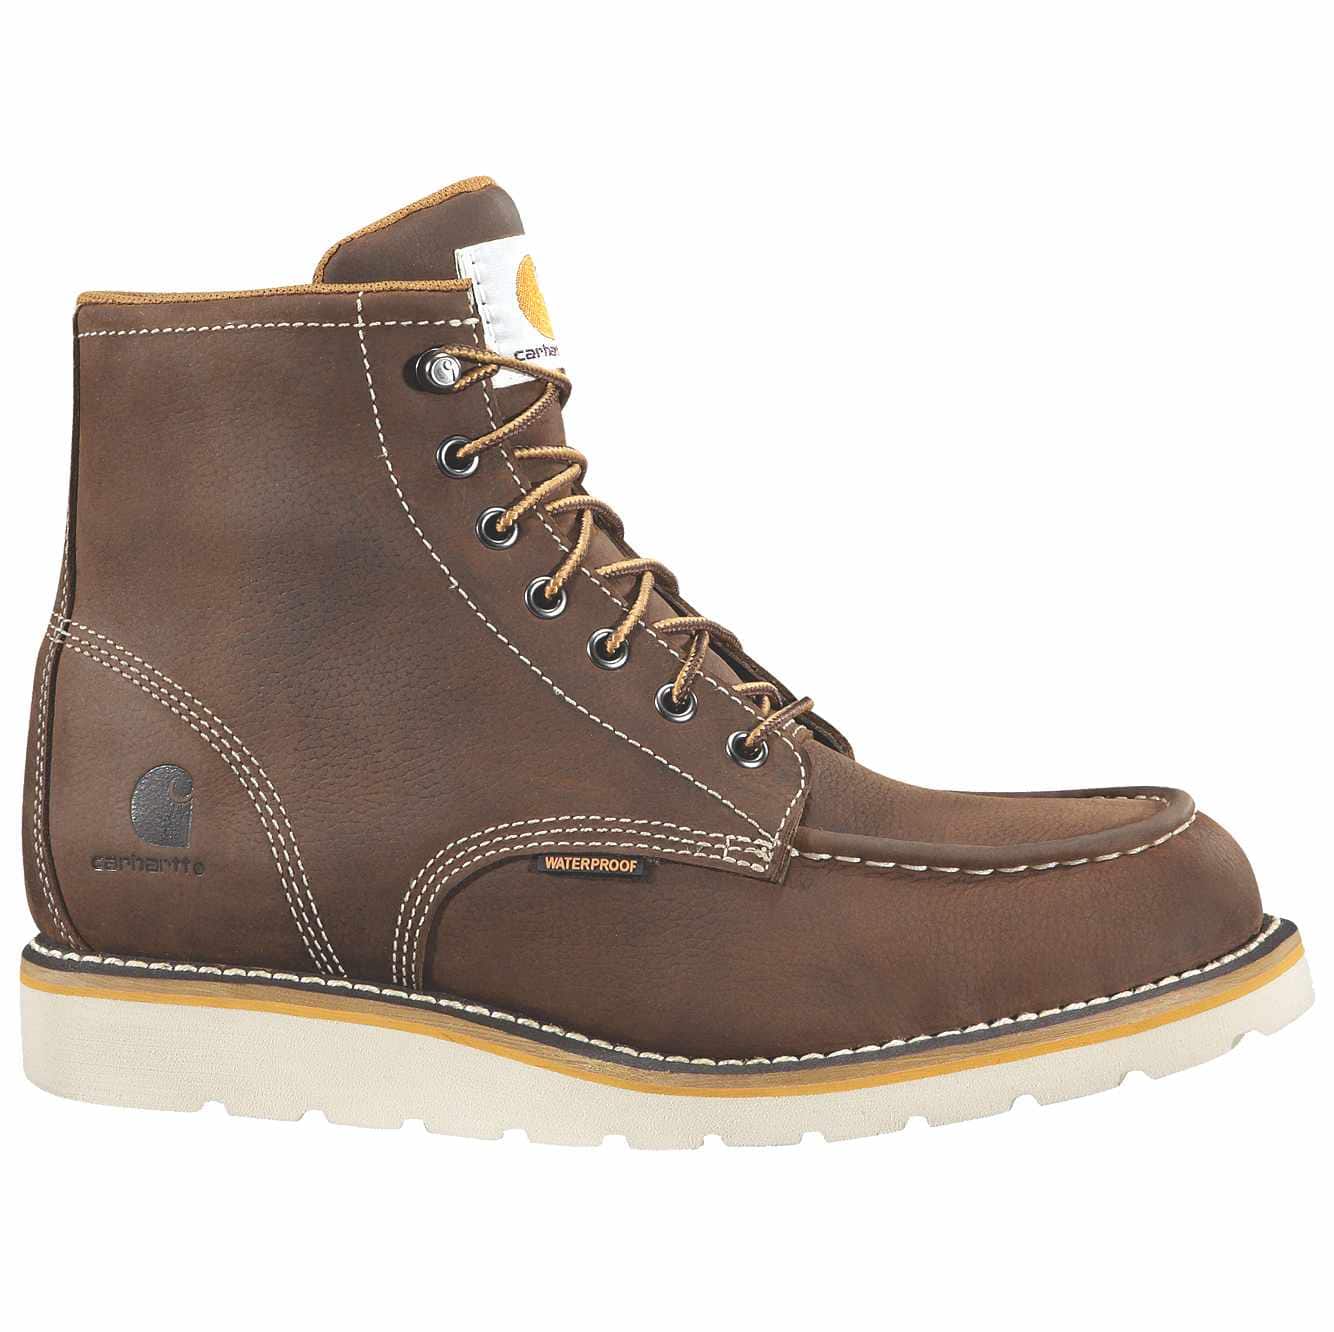 Carhartt Men's 6" Steel Toe Wedge Boots - Brown